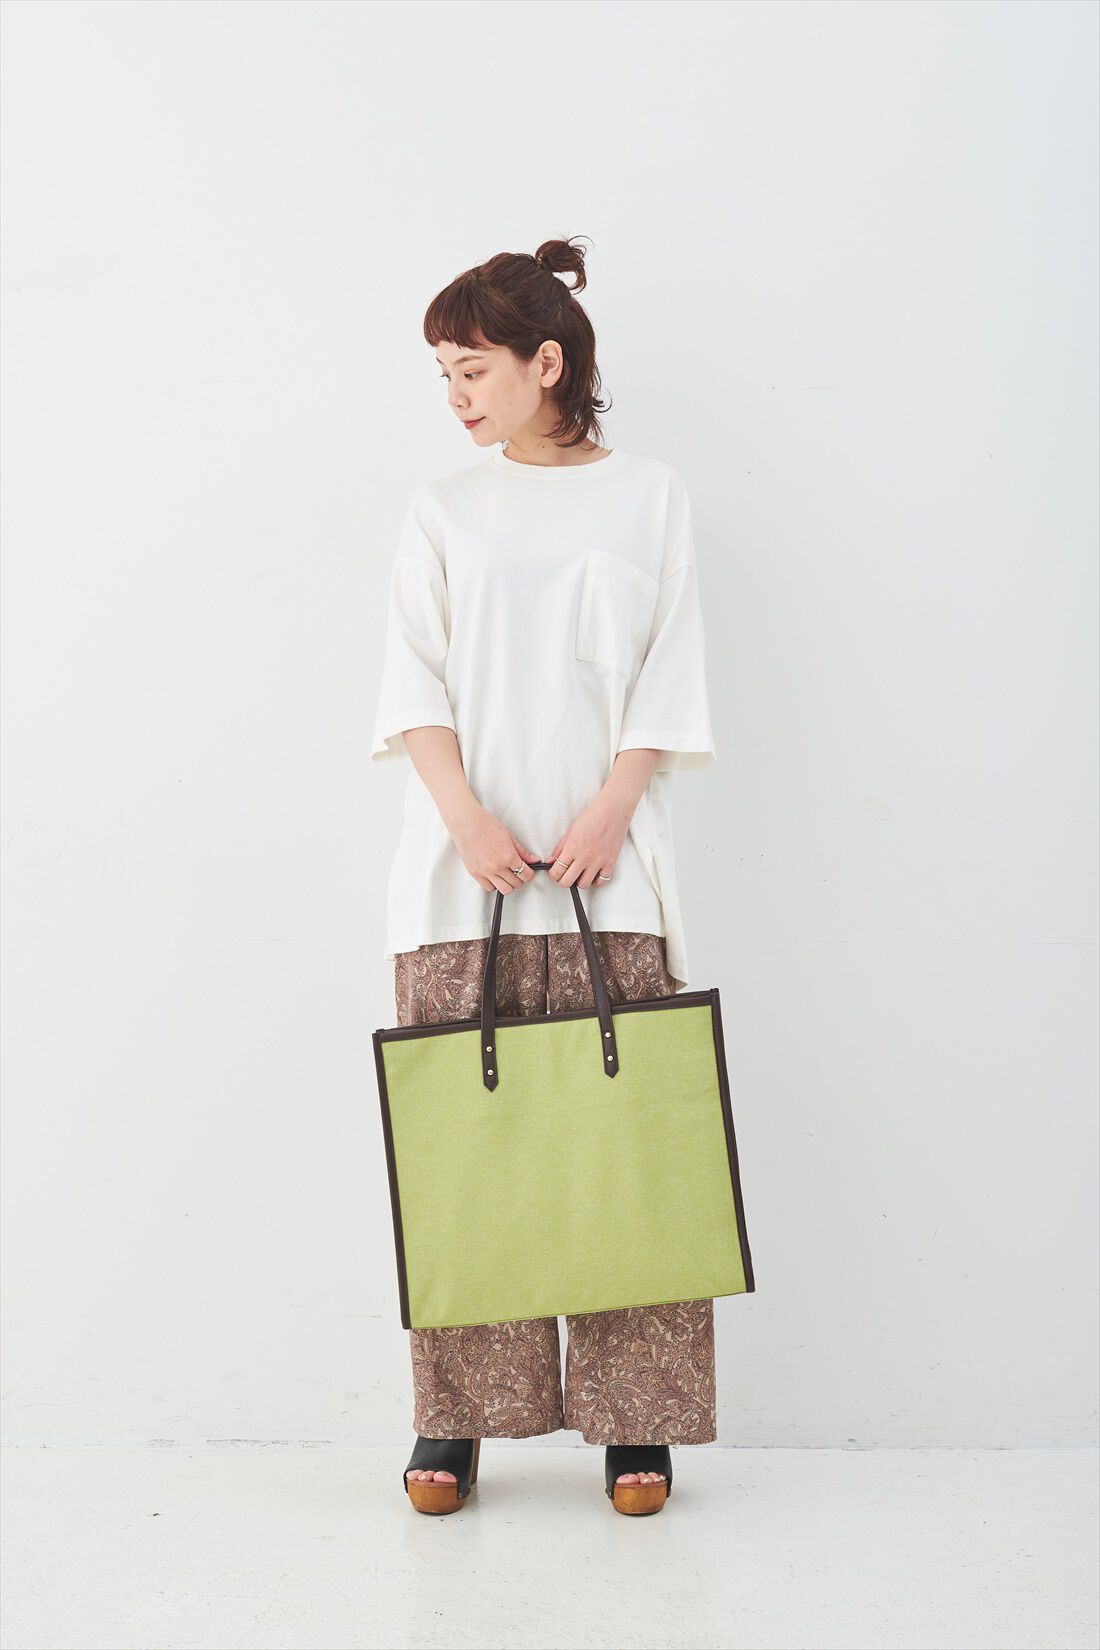 Real Stock|OSYAIRO ジャンボうちわが入るパイピングトートバッグ〈グリーン〉|持った時のサイズ感はこれくらい。肩かけもOK。